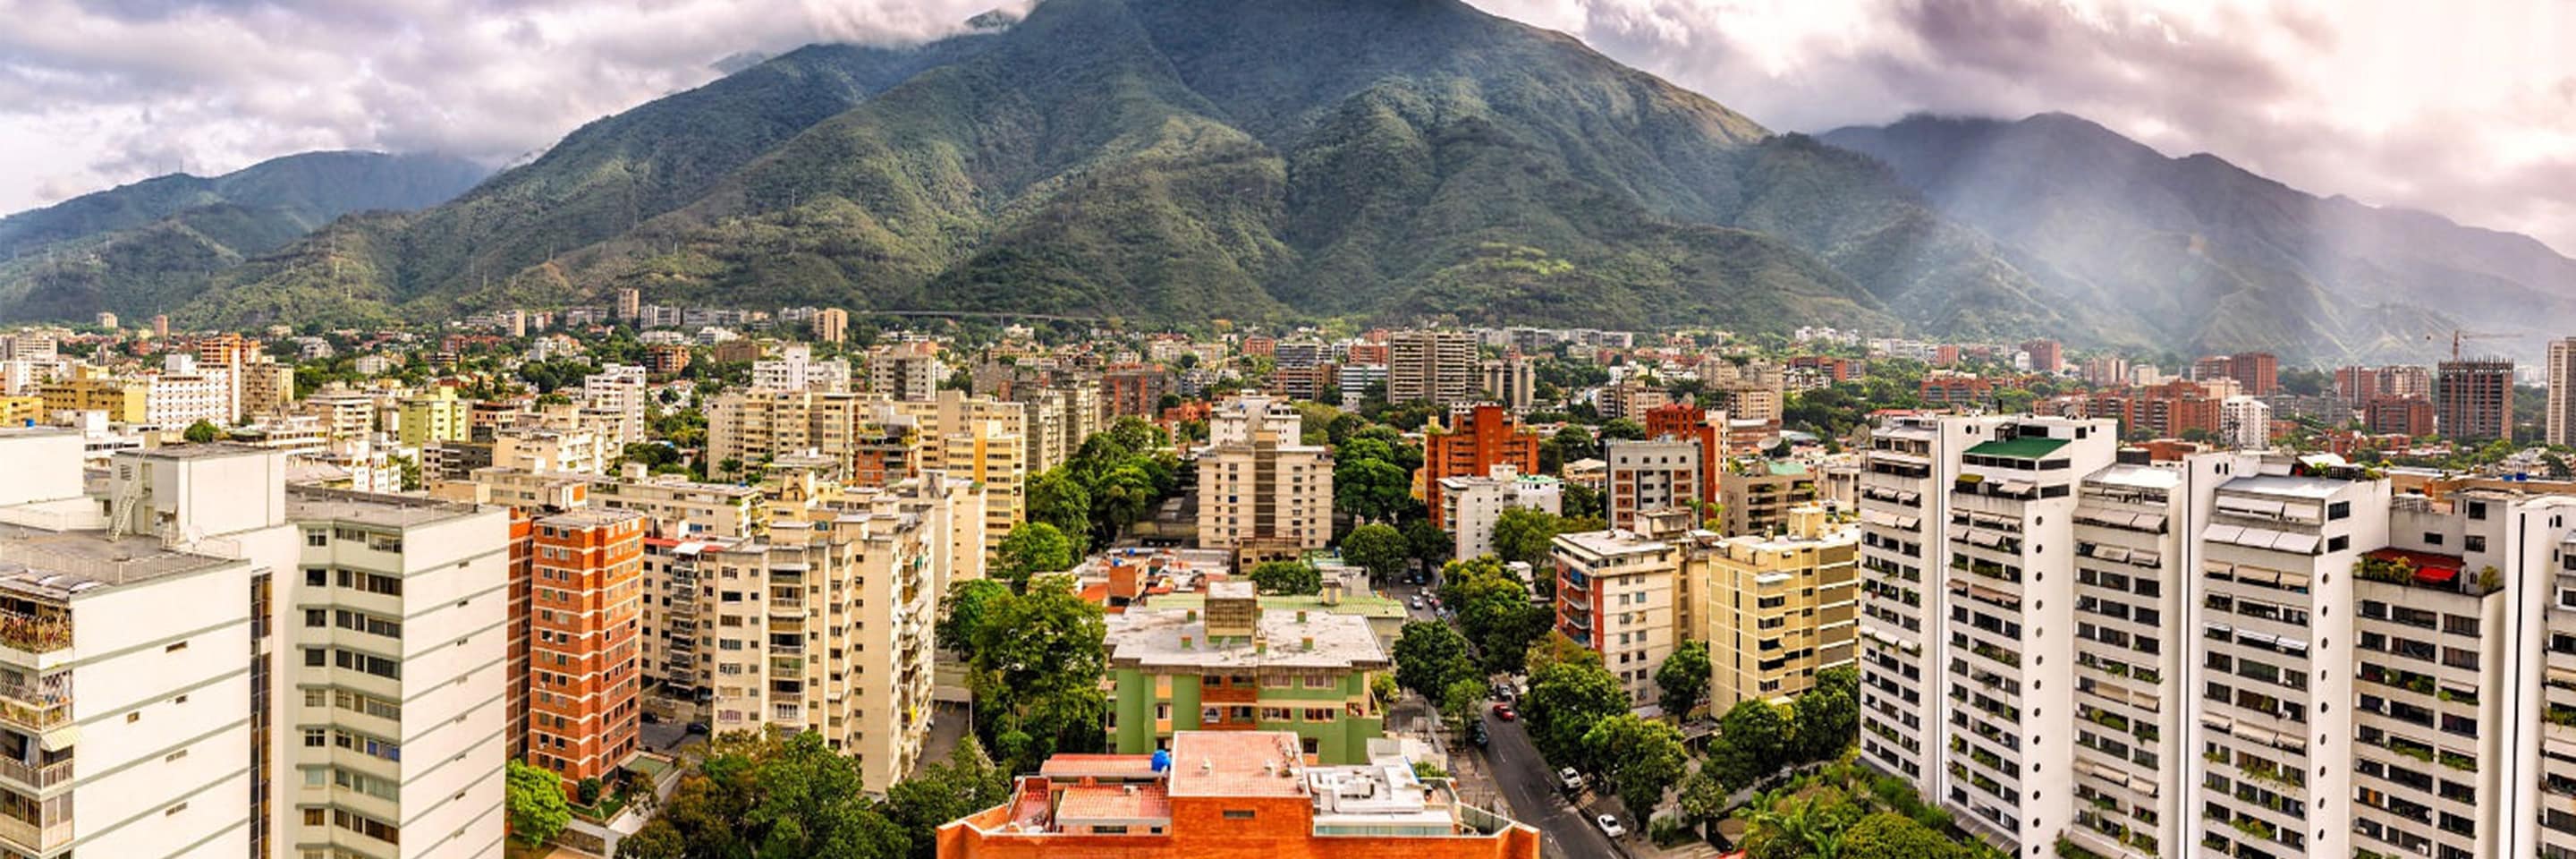 Hoteles en Caracas | Busque hoteles de Marriott en Caracas